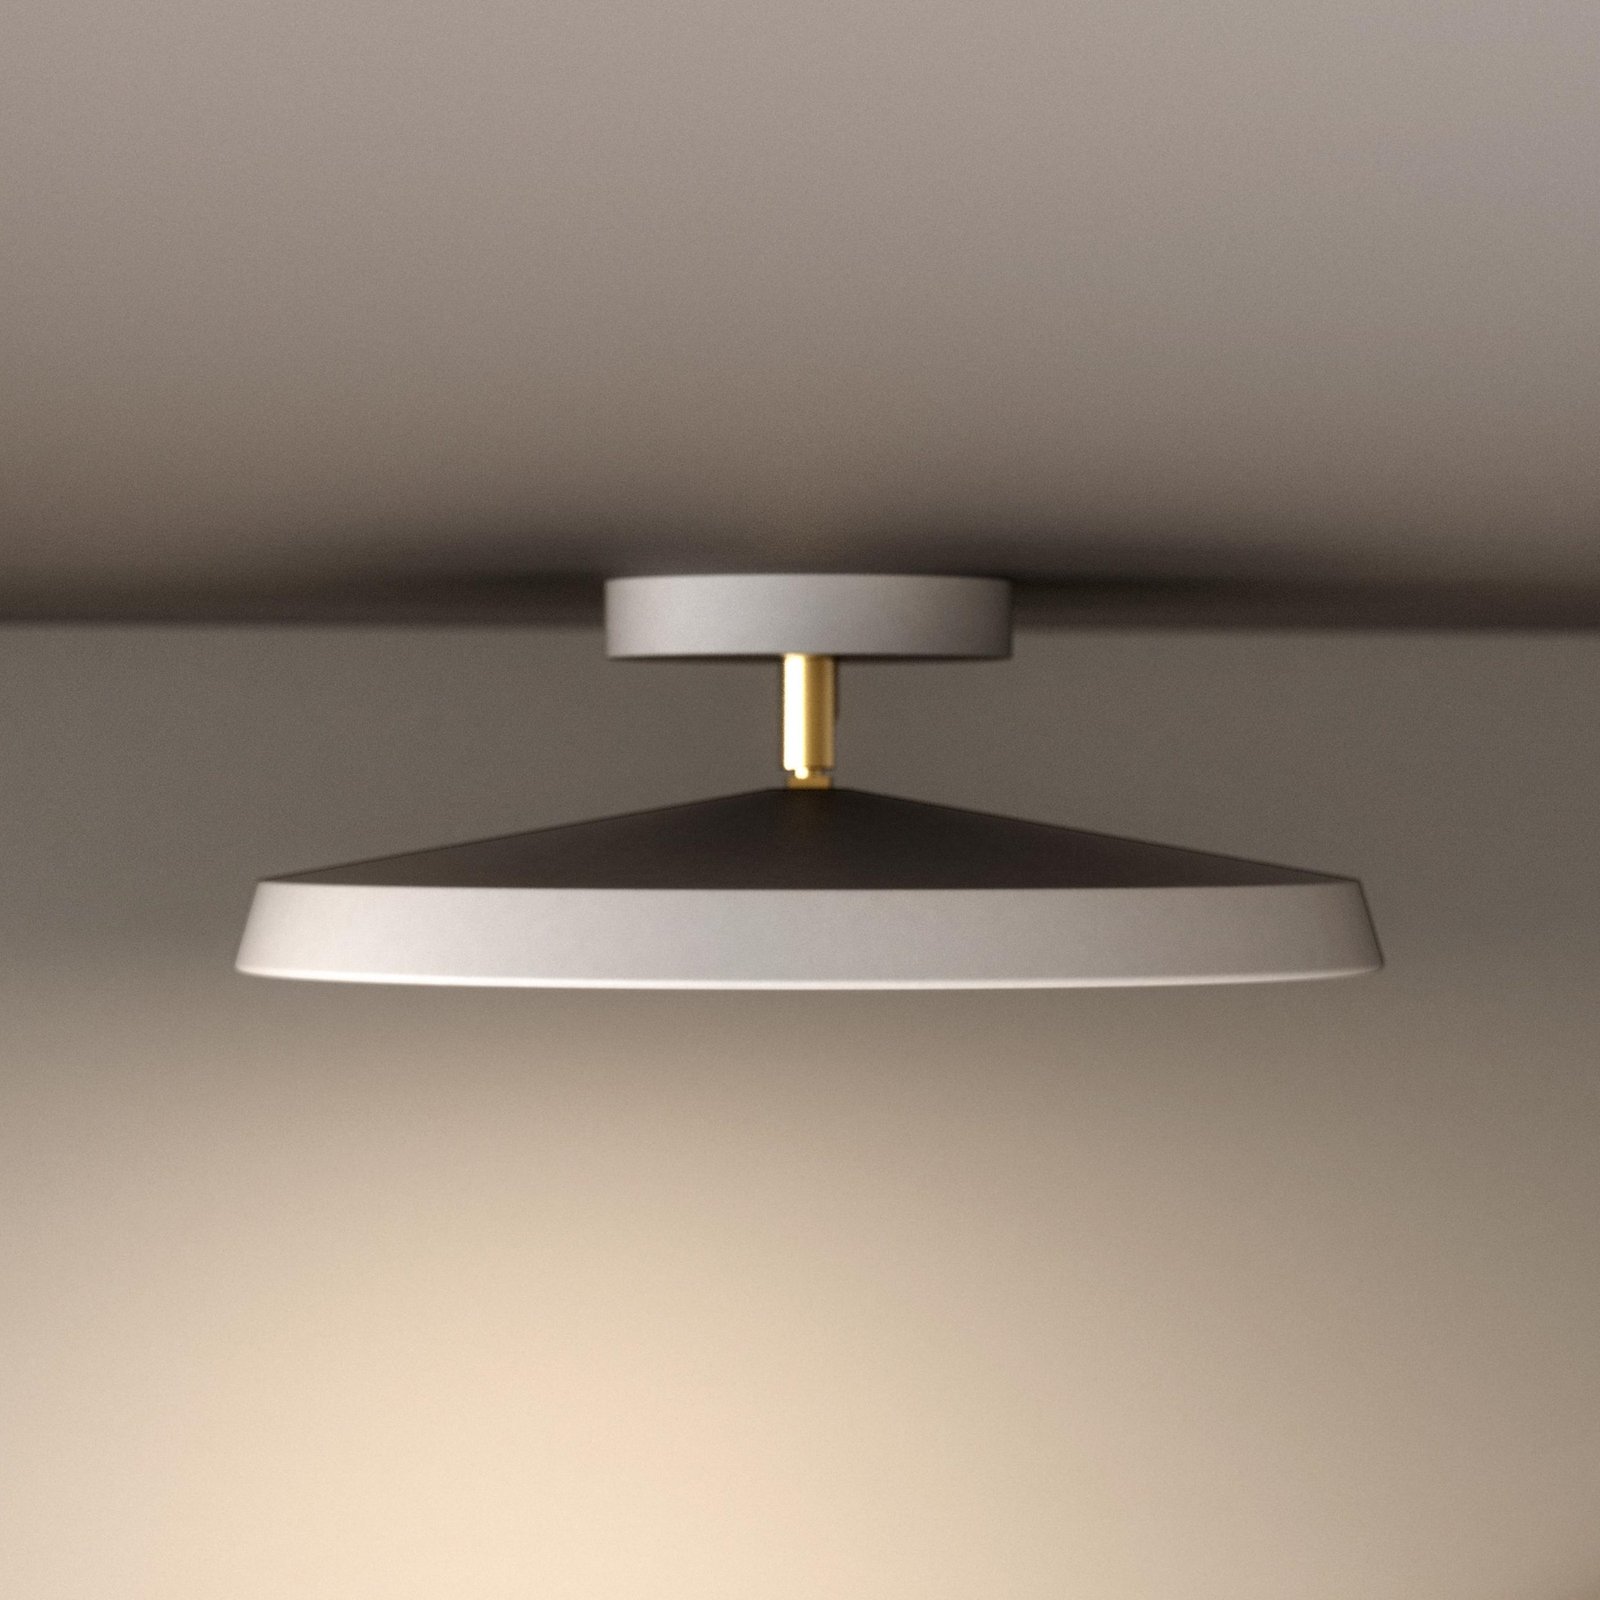 Lampada a LED da soffitto integrata Kaito 2 Pro, Ø 30 cm, bianco, interasse